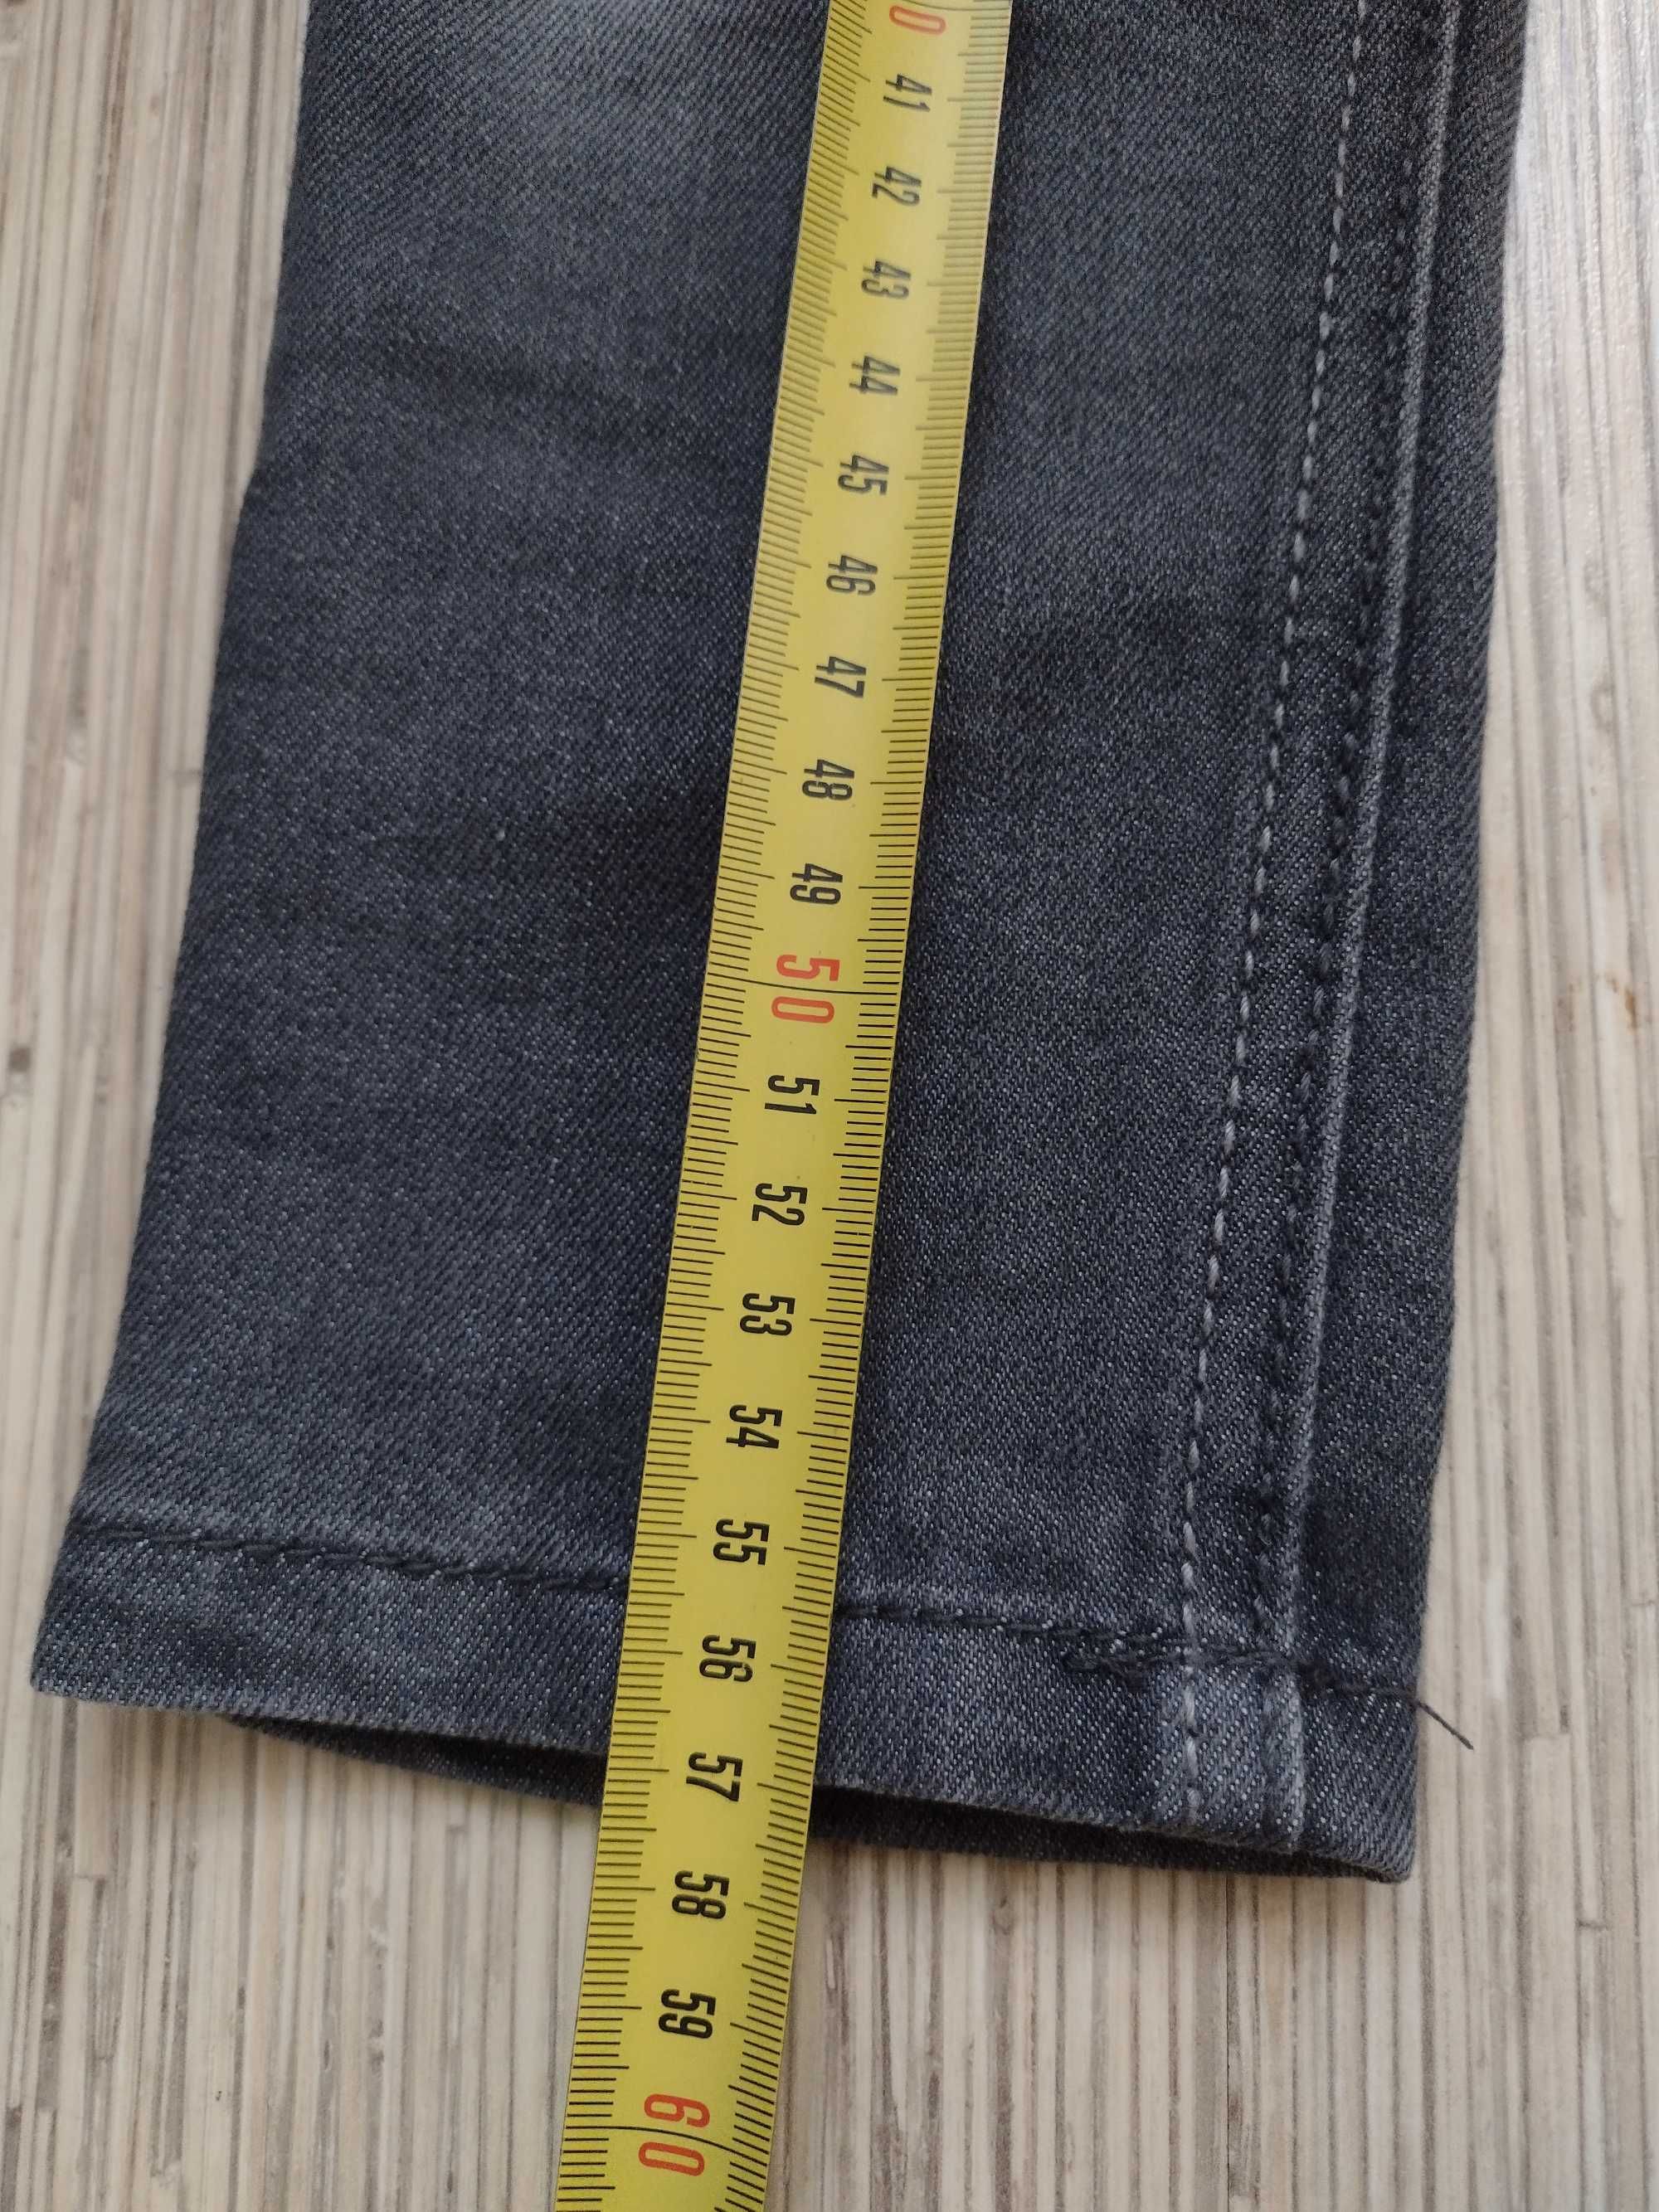 LUPILU, rozmiar 104, spodnie jeansowe dla chłopca